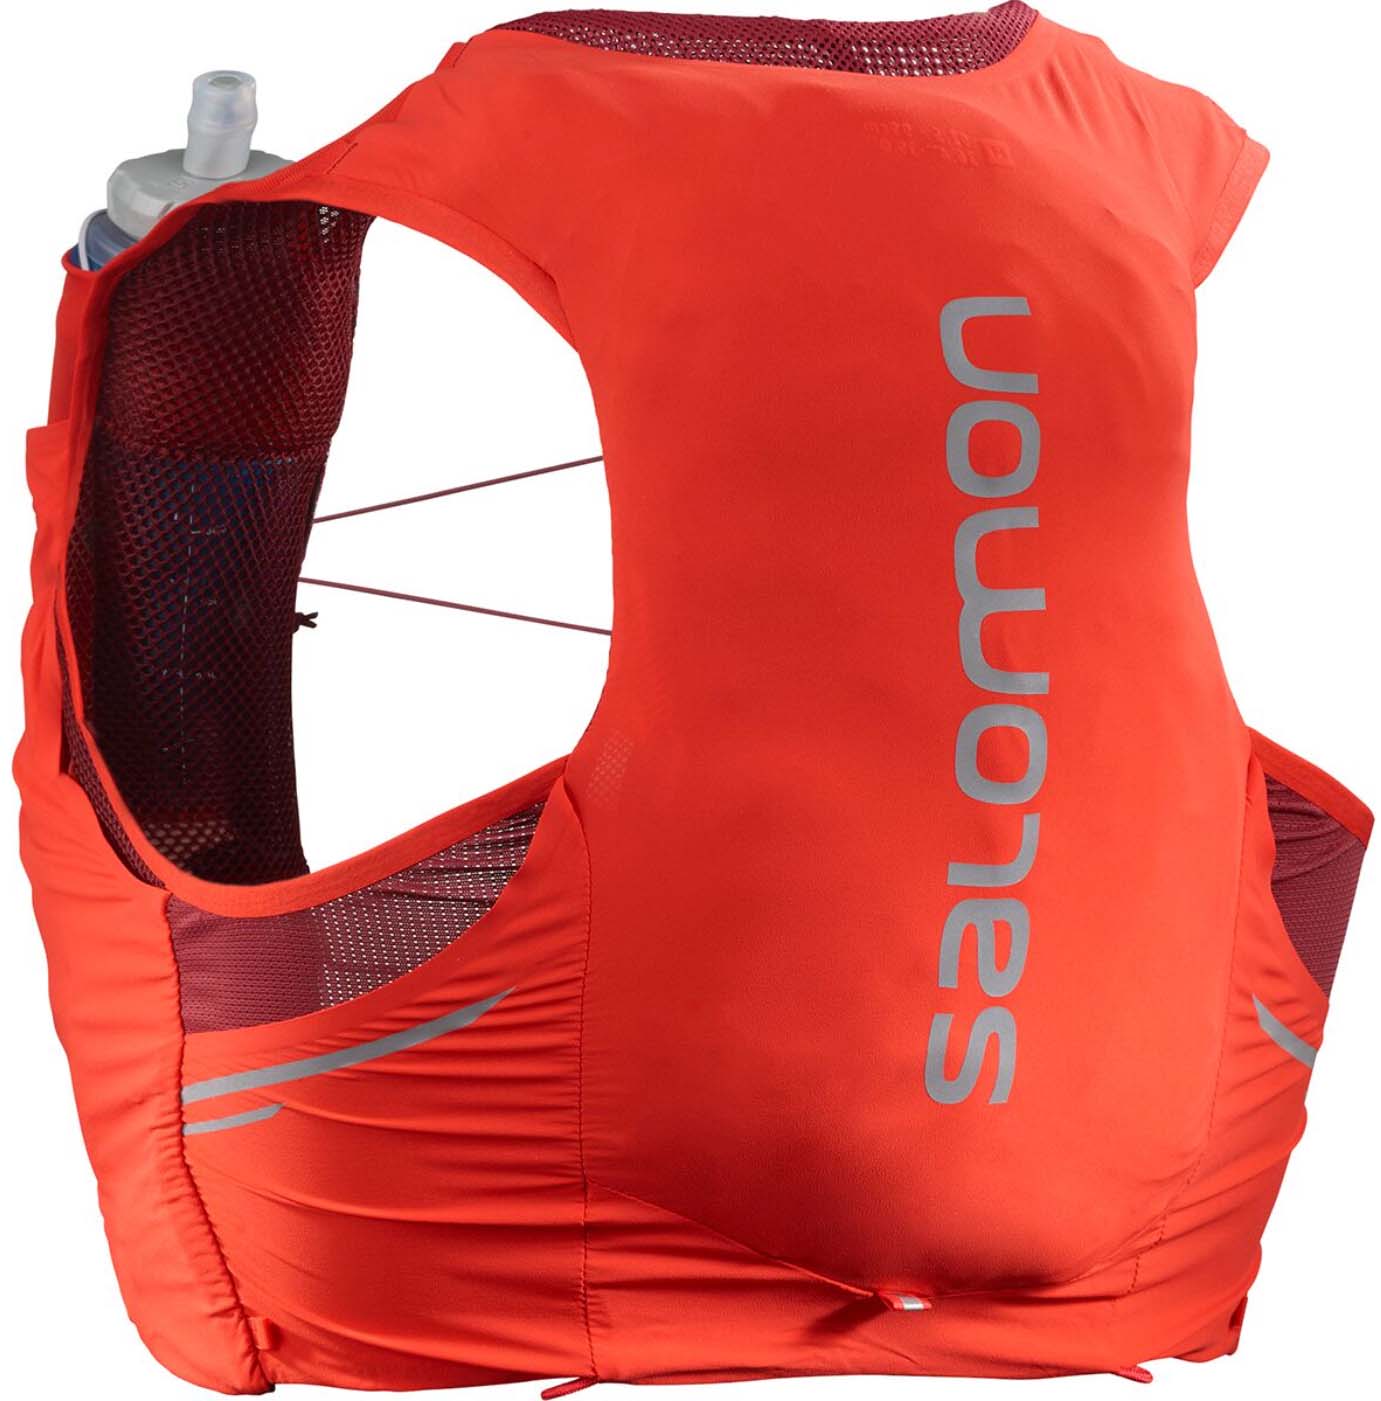 Salomon Sense Pro 5 running vest